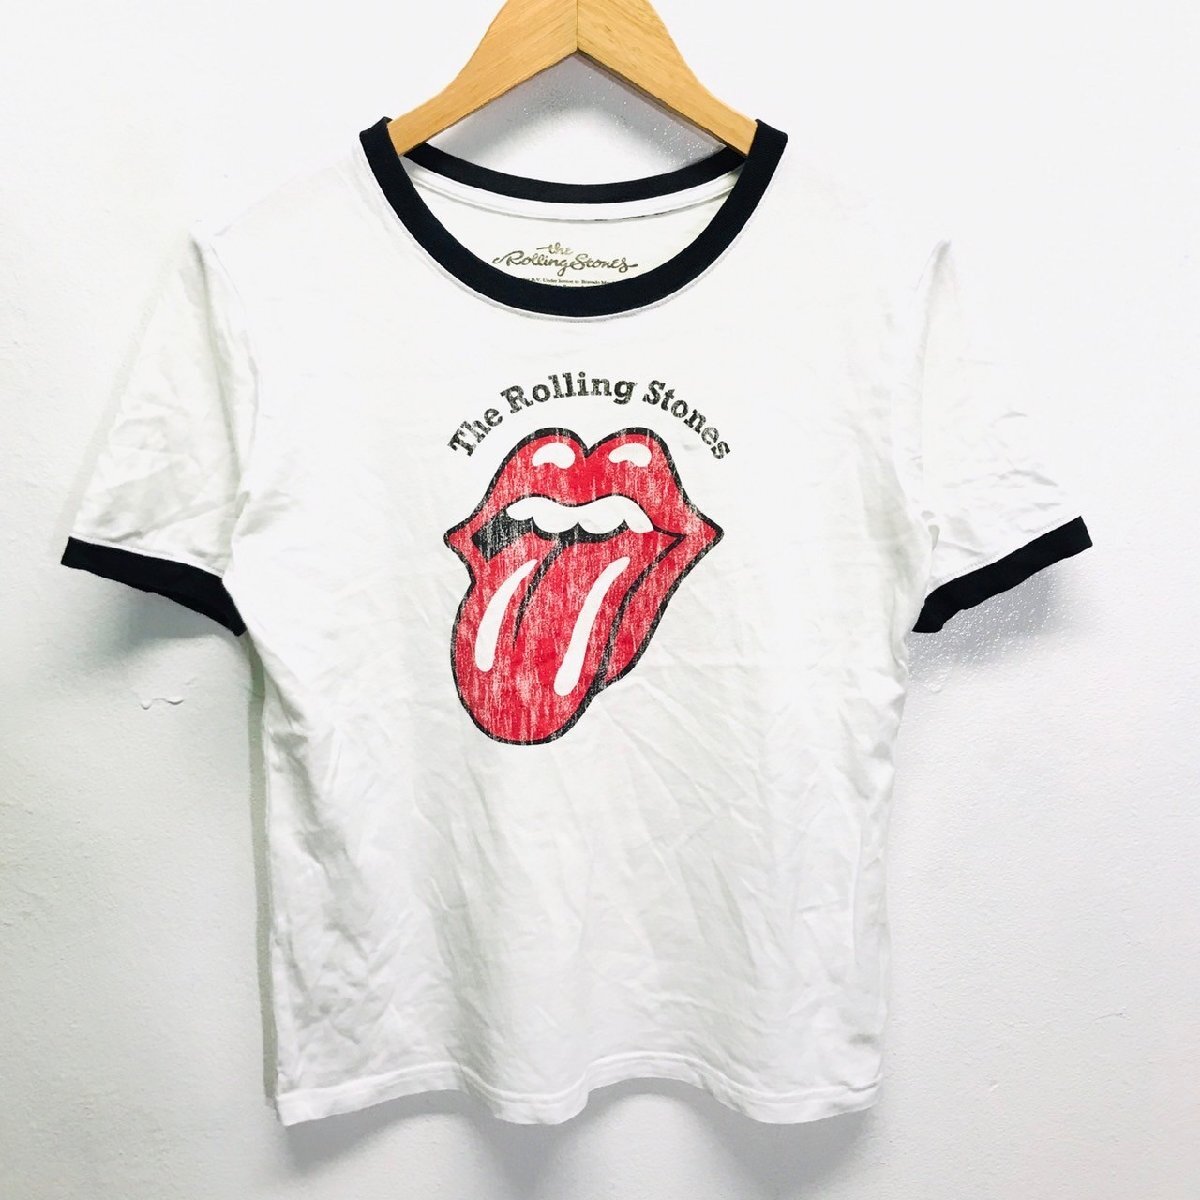 (^w^)b GU ジーユー the Rolling Stones ローリング ストーンズ デザイン リンガー T Tee シャツ チビT ロック バンド ホワイト S 8703iE_画像1